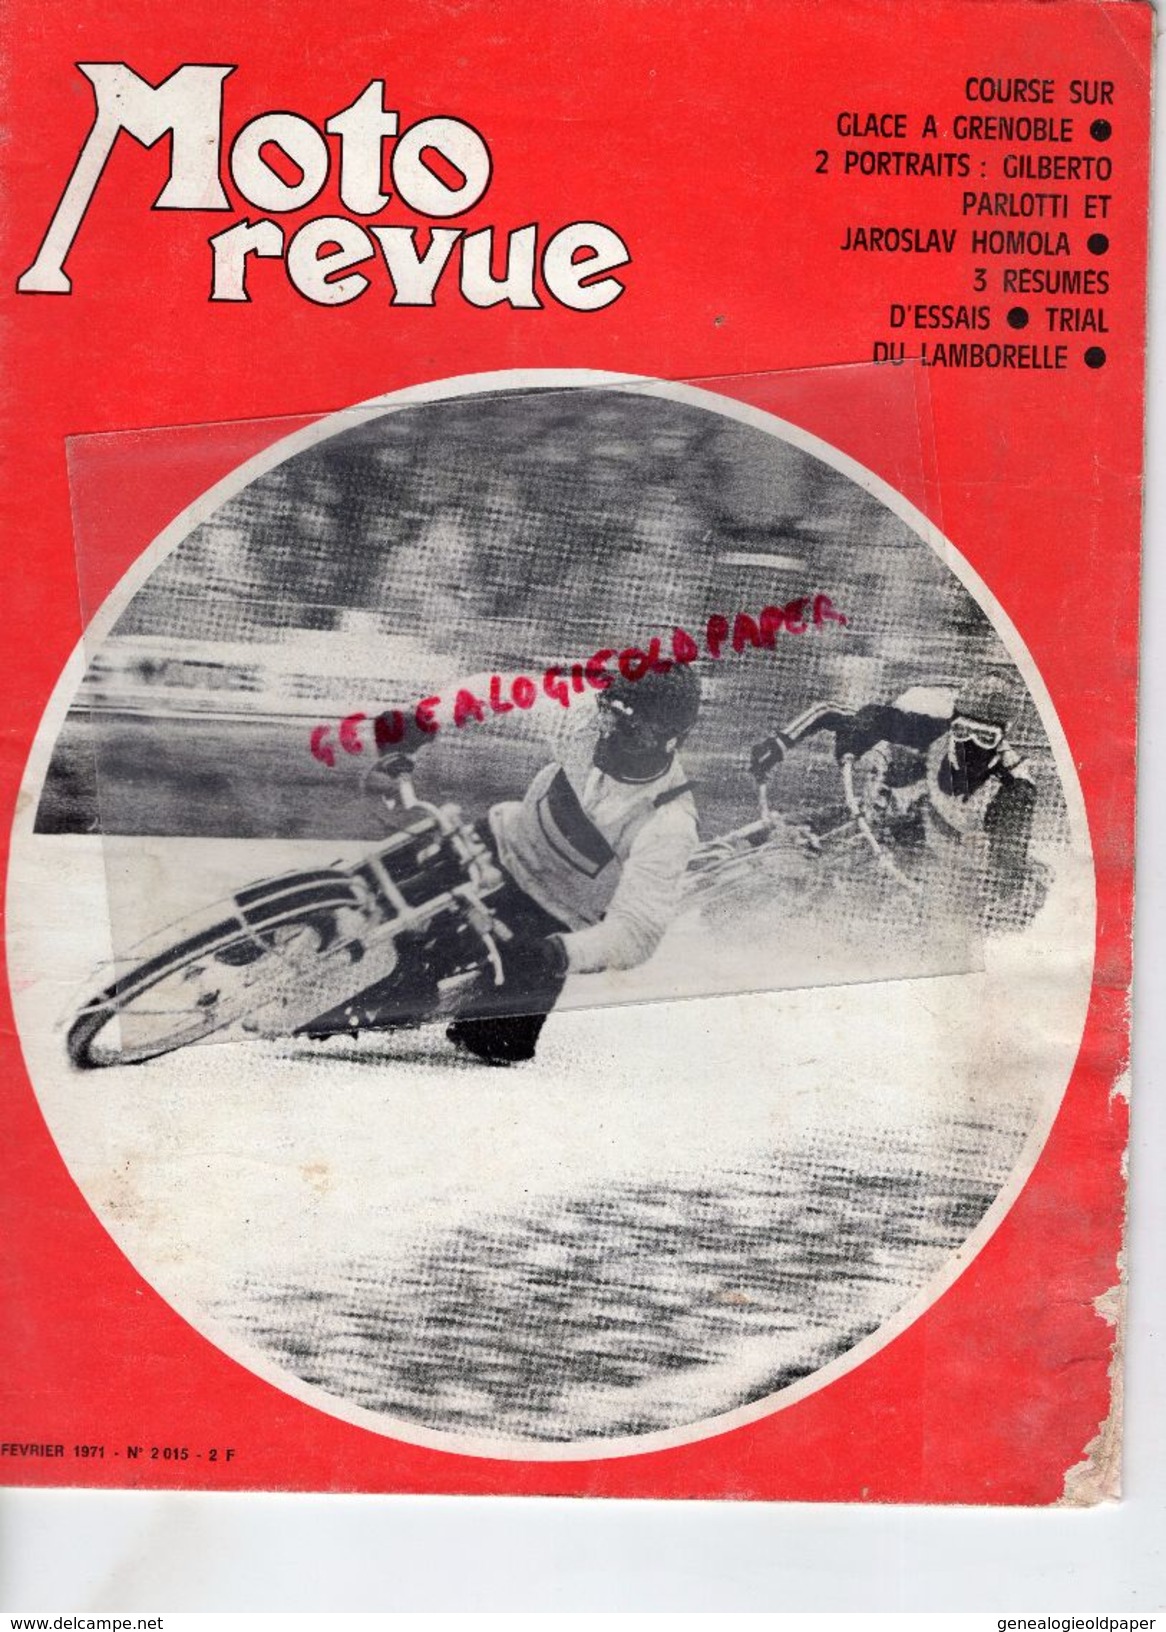 MOTO REVUE -N° 2015-13-2-1971- COURSE SUR GLACE GRENOBLE-GILBERTO PARLOTTI-JAROSLAV HOMOLA-TRIAL LAMBORELLE-KAWASAKI - Motorfietsen